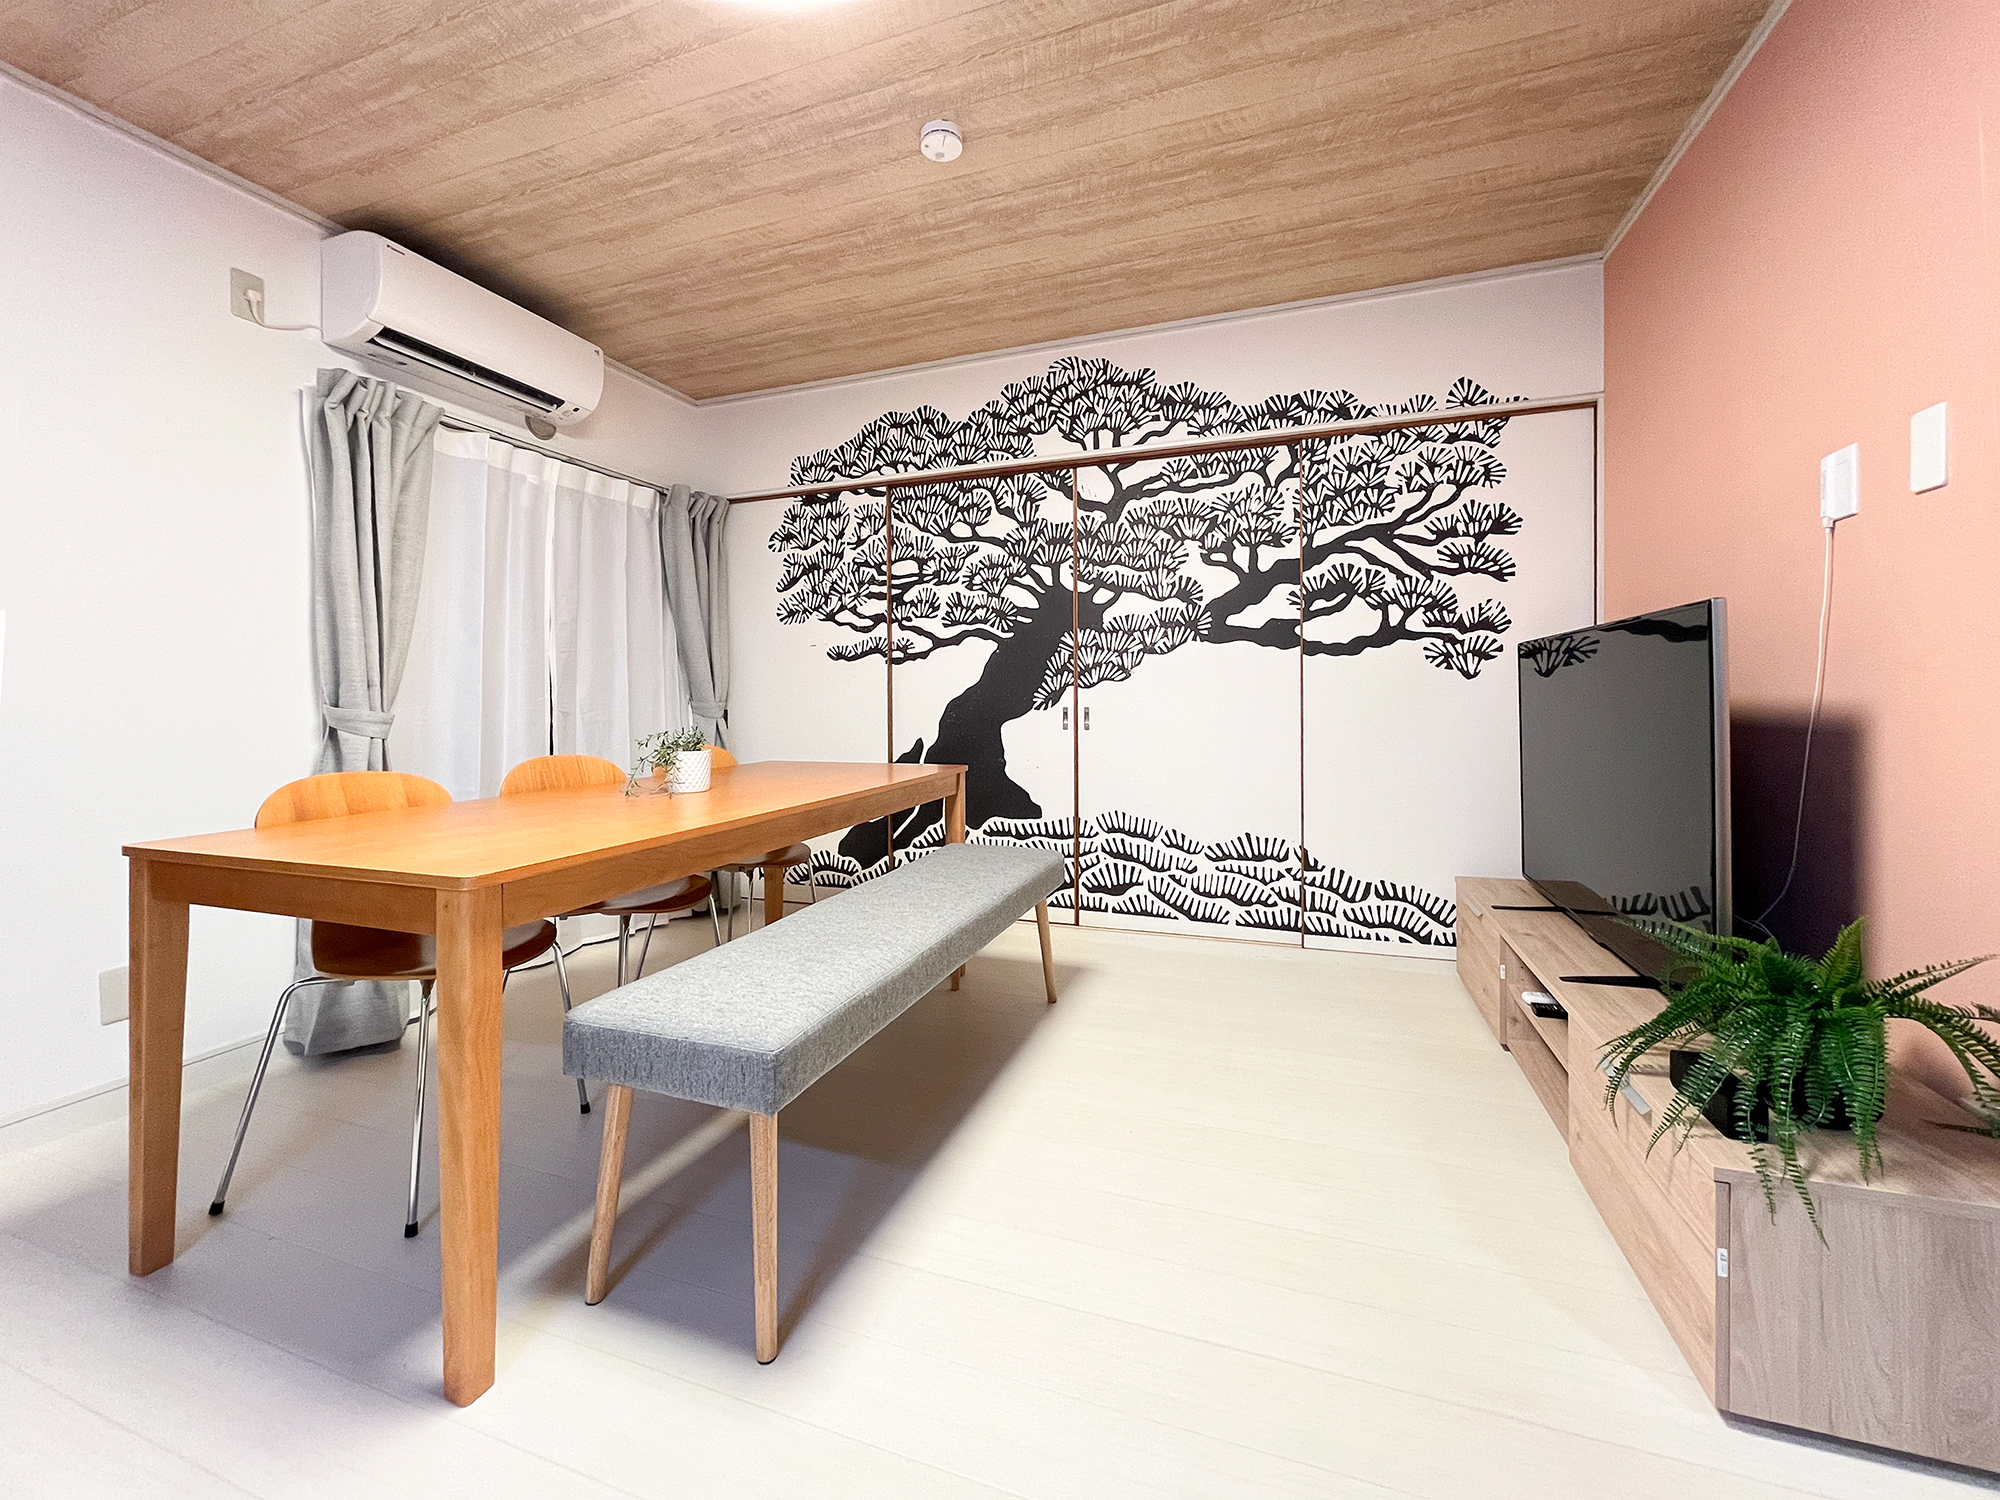 東京都墨田区の民泊施設内、リビングと寝室を隔てる建具へと展開。和の印象を引き立てる黒松がダイナミックに配された。